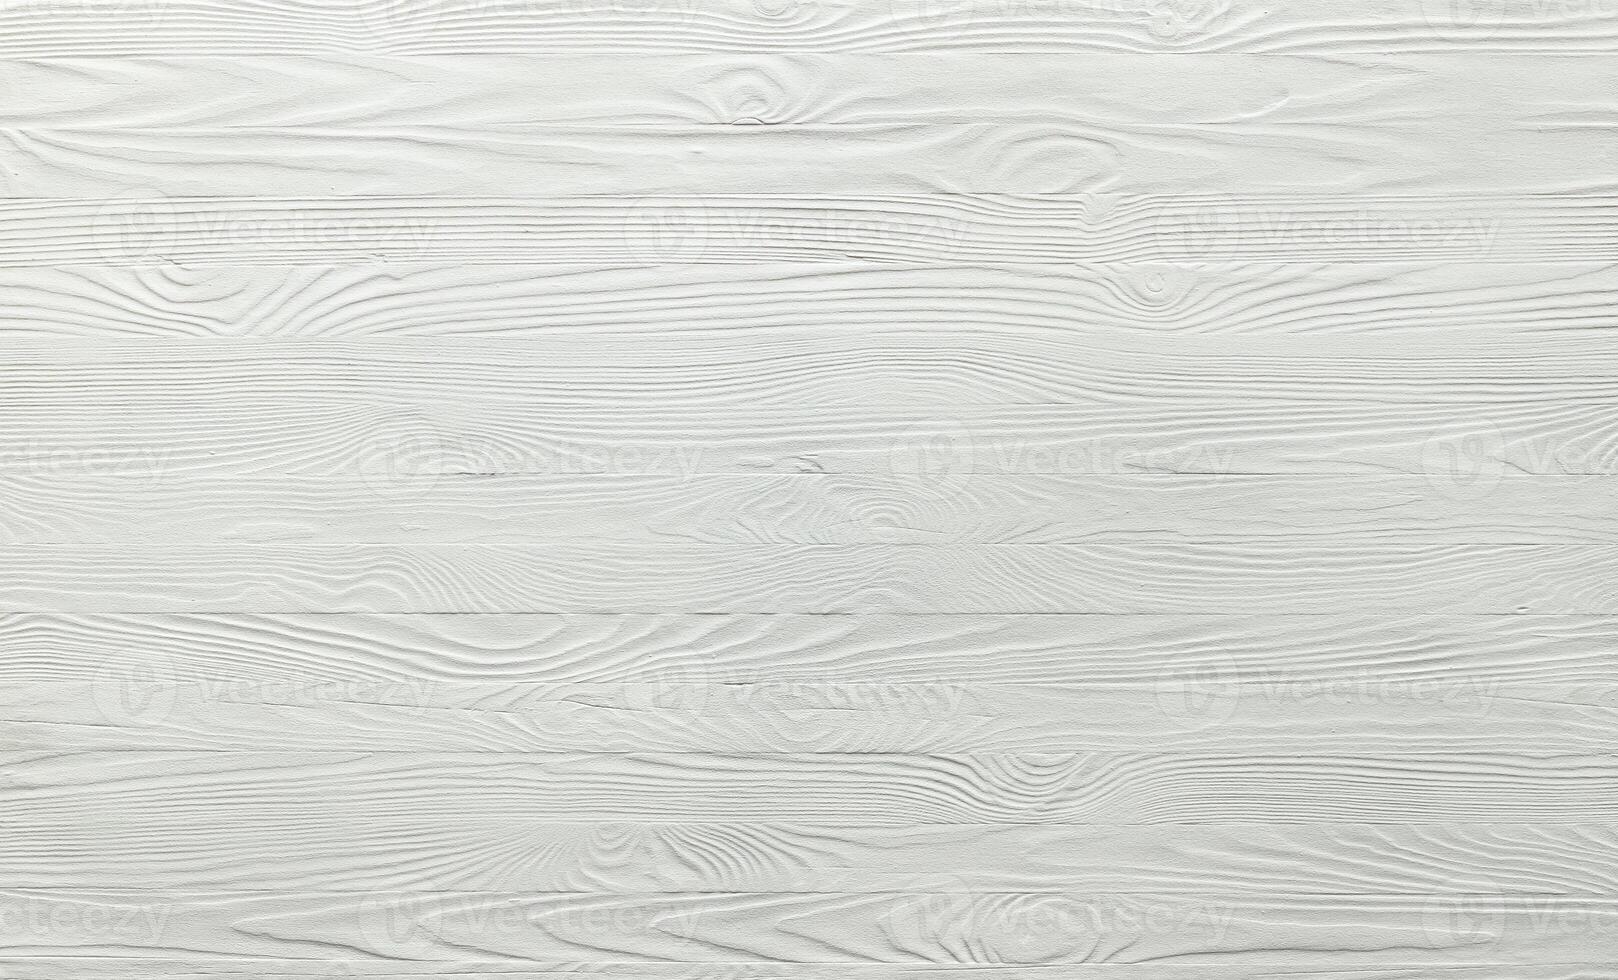 blanco de madera fondo, rústico blanco tablones textura foto